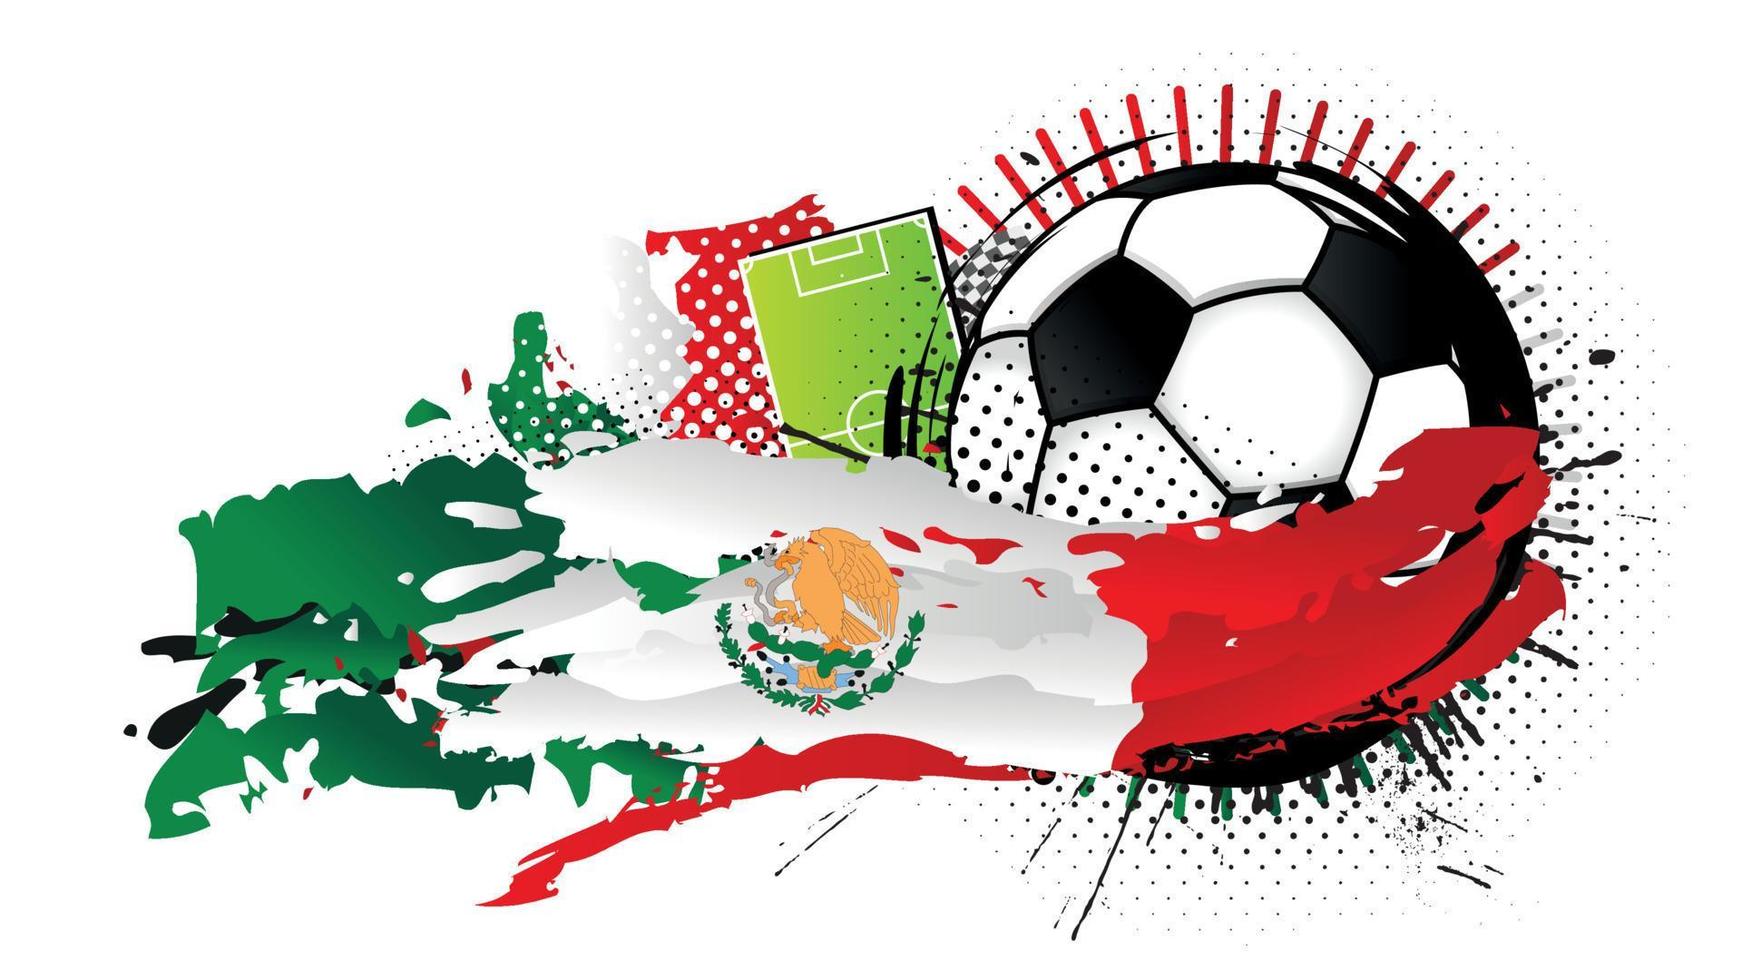 bola de futebol preta e branca cercada por manchas vermelhas, brancas e verdes formando a bandeira do méxico com um campo de futebol ao fundo. imagem vetorial vetor